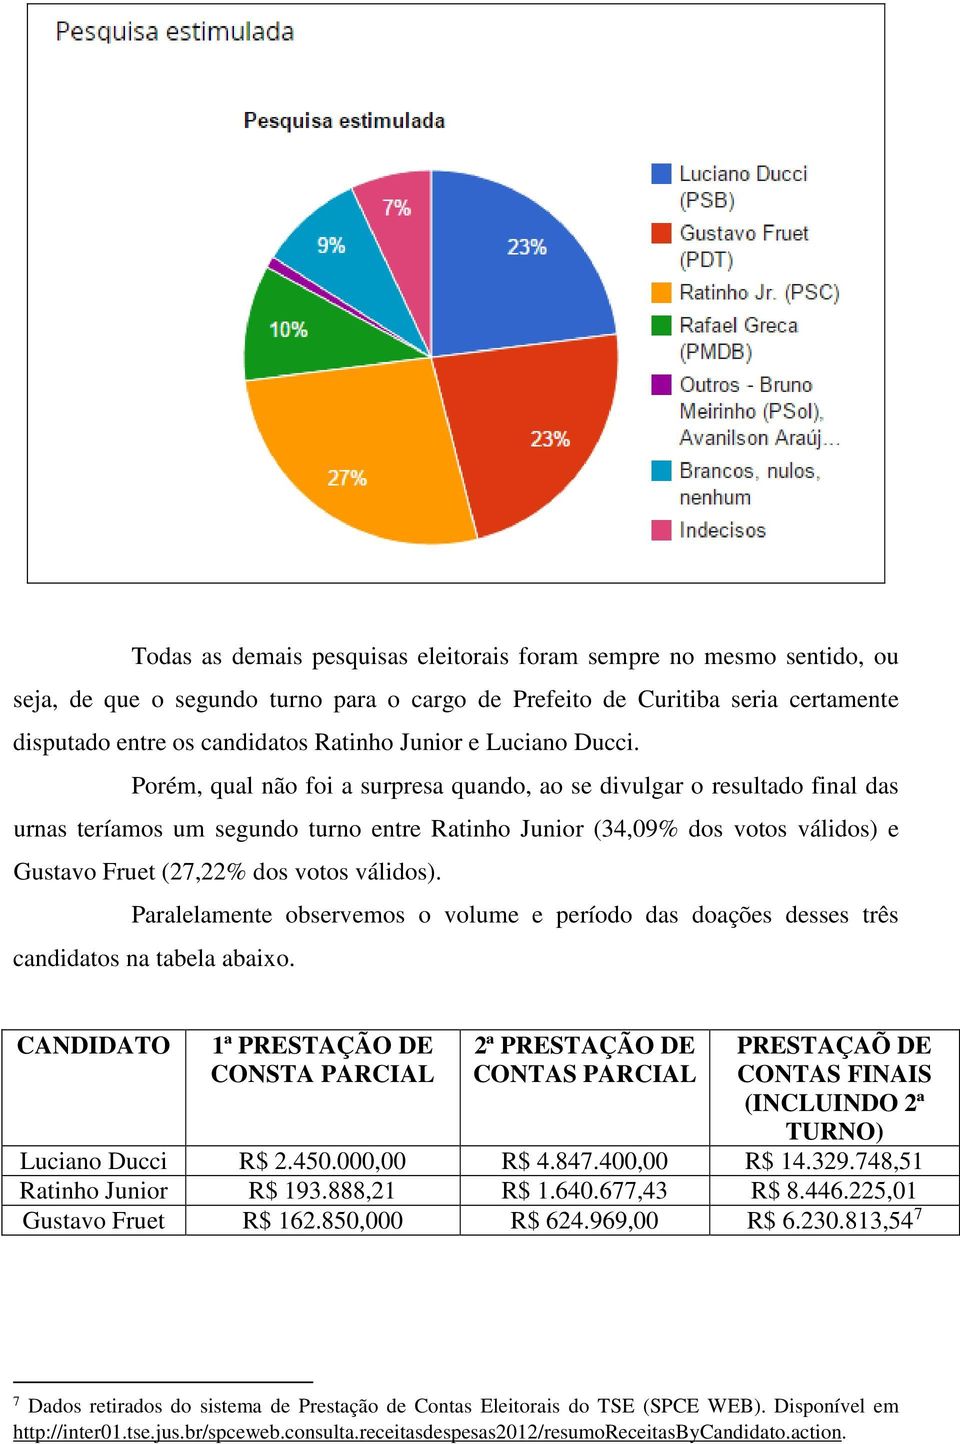 Porém, qual não foi a surpresa quando, ao se divulgar o resultado final das urnas teríamos um segundo turno entre Ratinho Junior (34,09% dos votos válidos) e Gustavo Fruet (27,22% dos votos válidos).